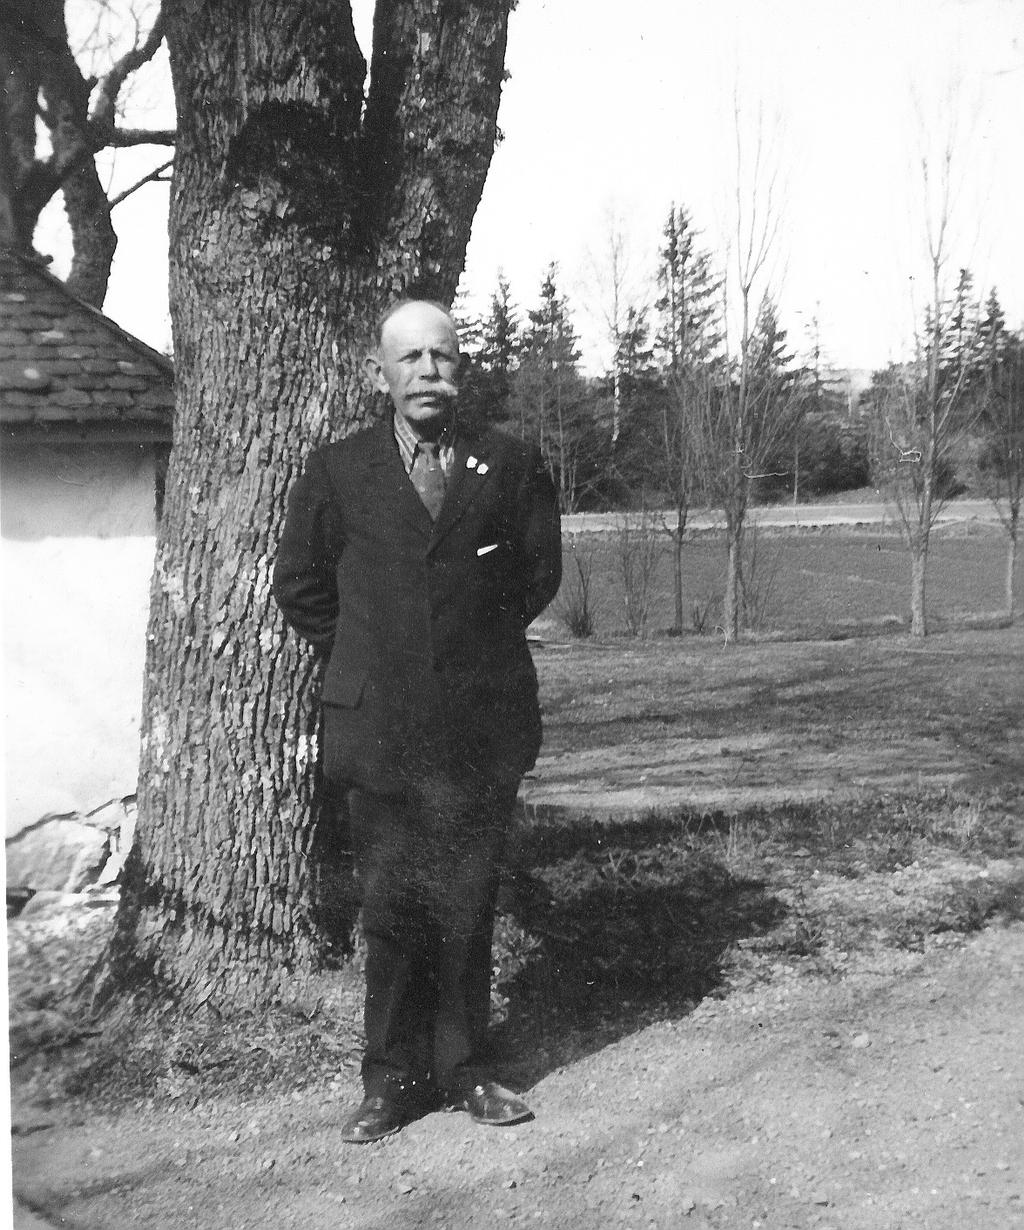 1900-1907 Samtidigt med att Hanoksson flyttar till Grums, flyttar även Mauriz Magnusson med familj från Ånimskog gård, där han varit dräng hos Lars Magnusson, till Säm i Grums,.